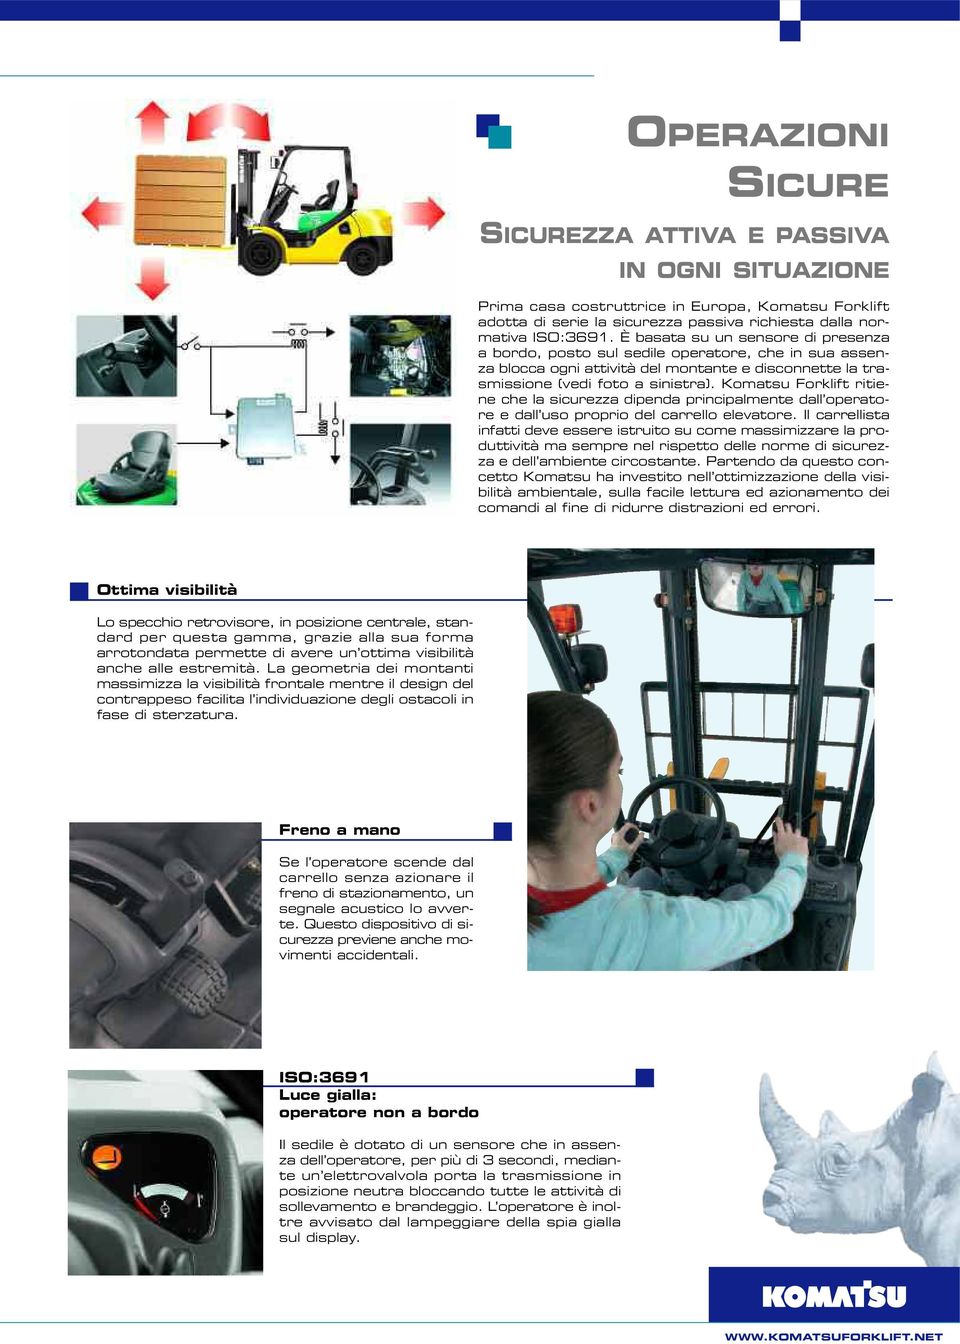 Komatsu Forklift ritiene che la sicurezza dipenda principalmente dall operatore e dall uso proprio del carrello elevatore.